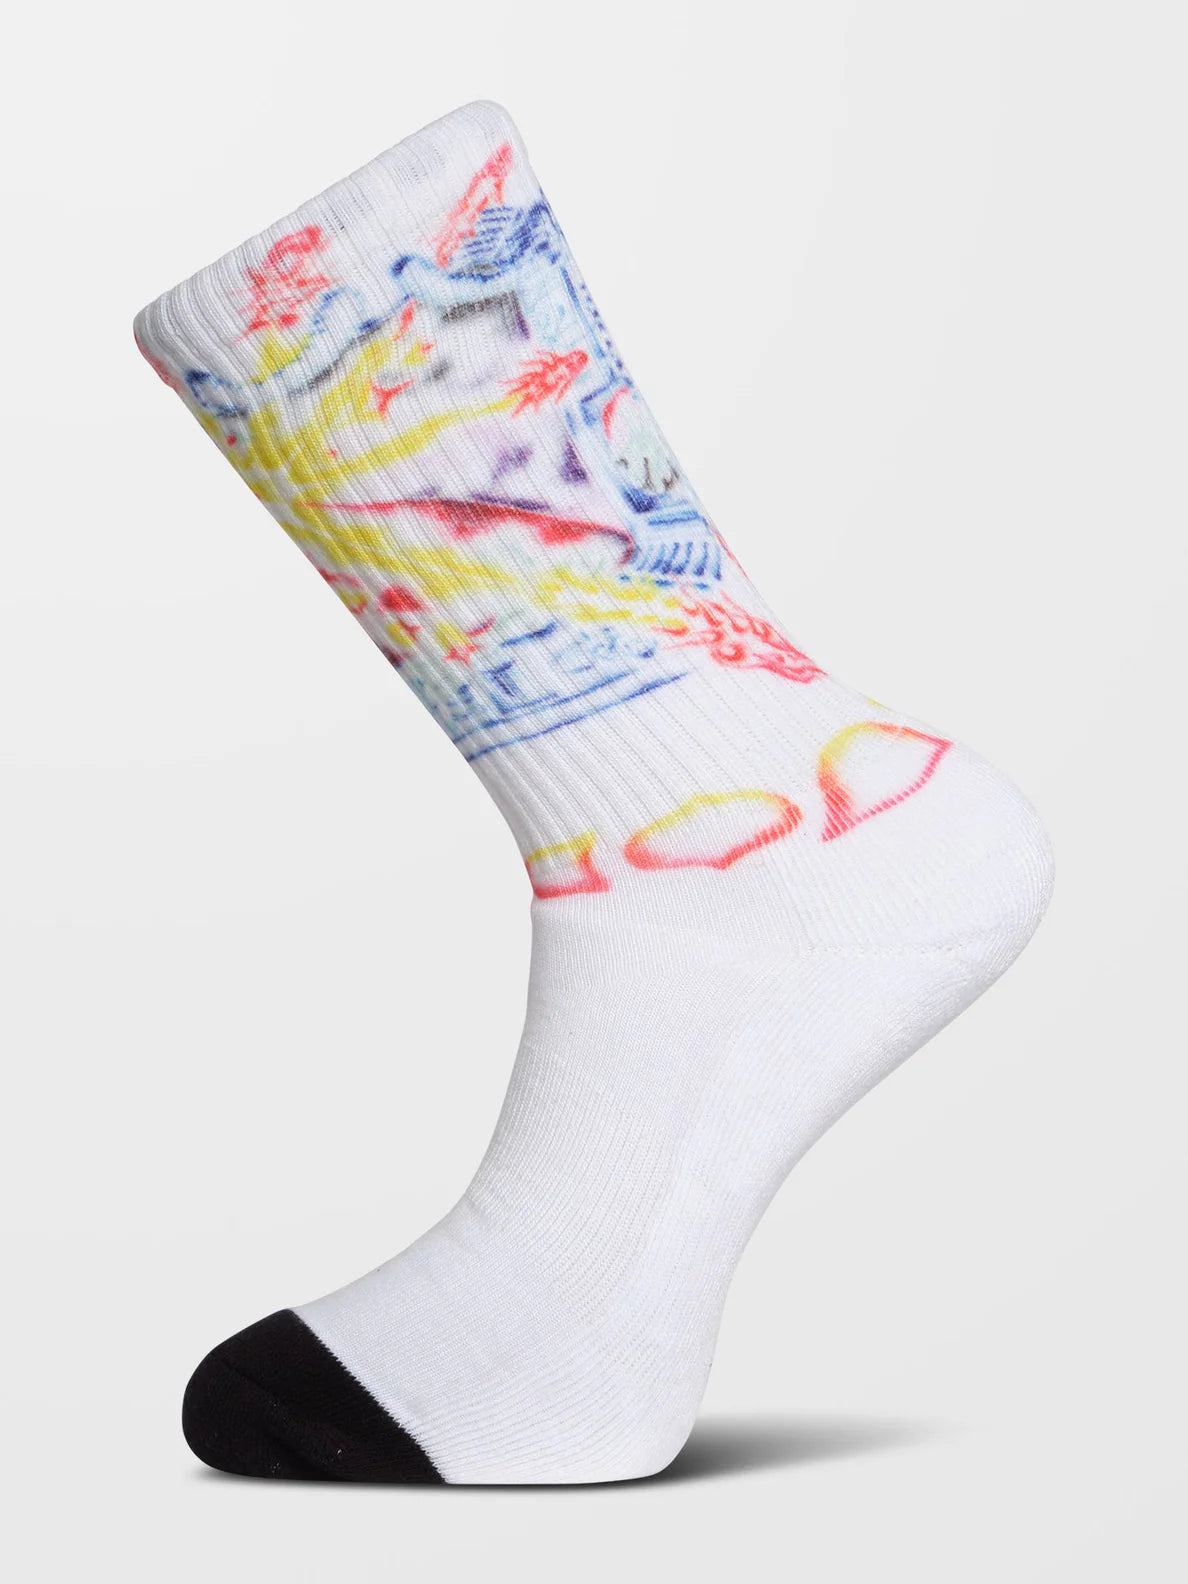 Volcom Sam Ryser Socken – Weiß | Meistverkaufte Produkte | Neue Produkte | Neueste Produkte | Sammlung_Zalando | Socken | Volcom-Shop | surfdevils.com